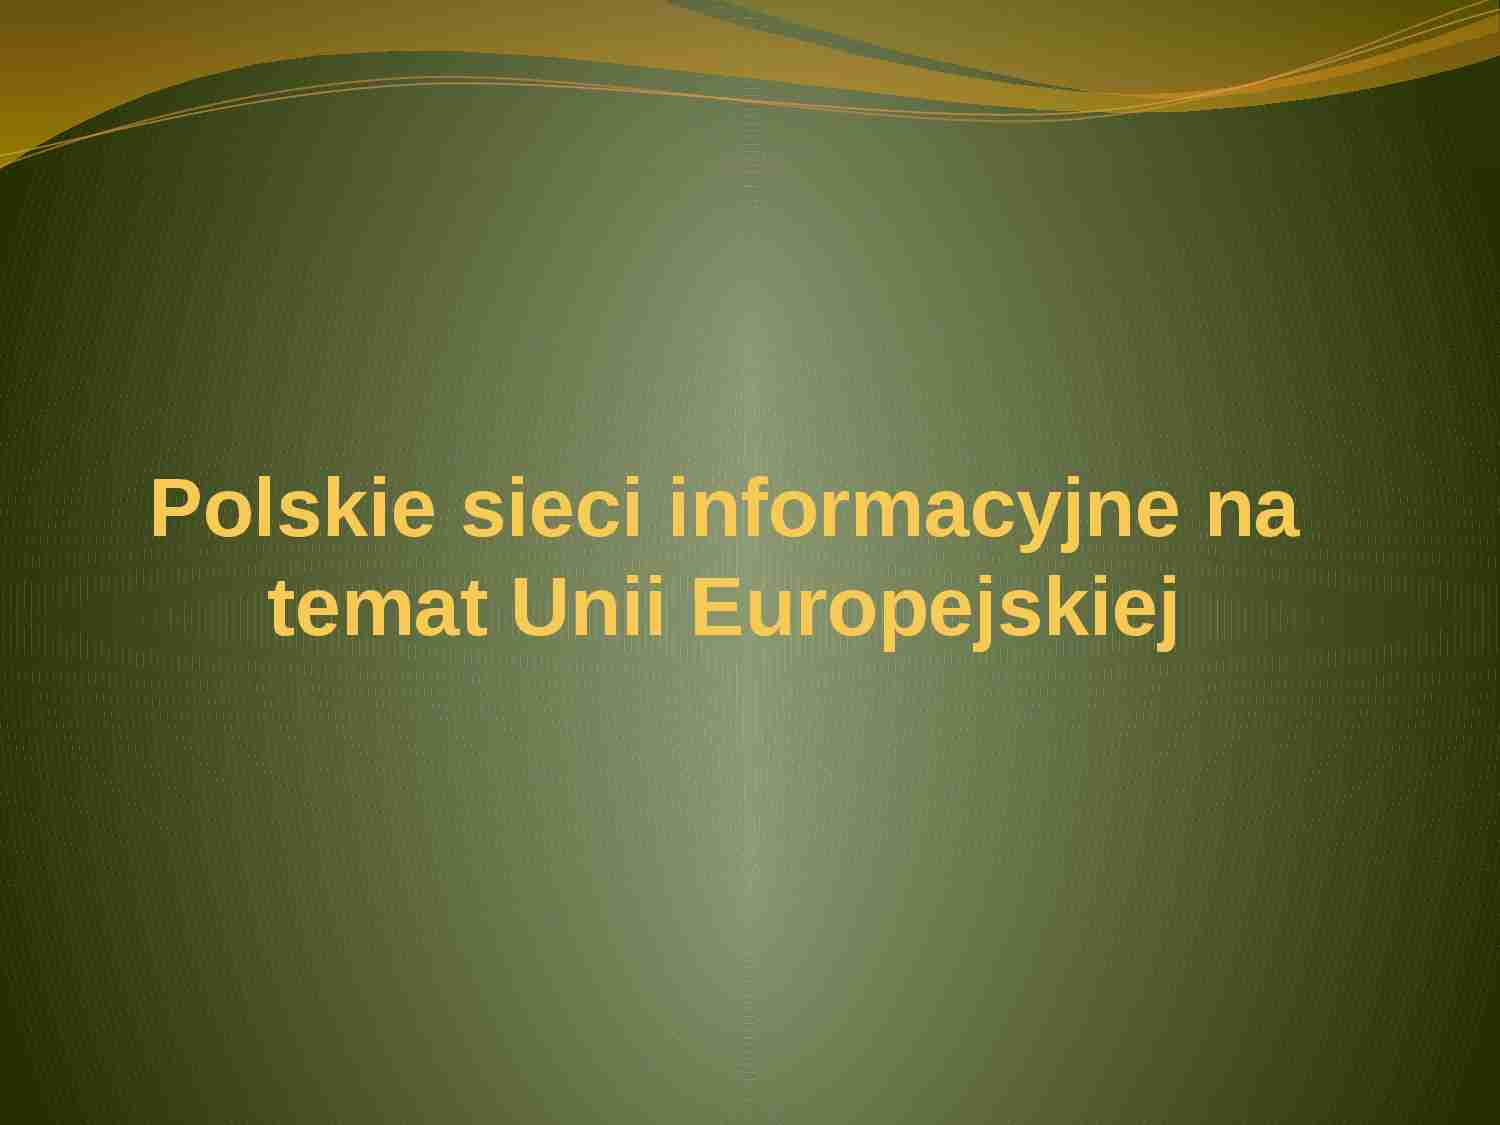 Polskie sieci informacyjne na temat Unii Europejskiej - prezentacja - strona 1